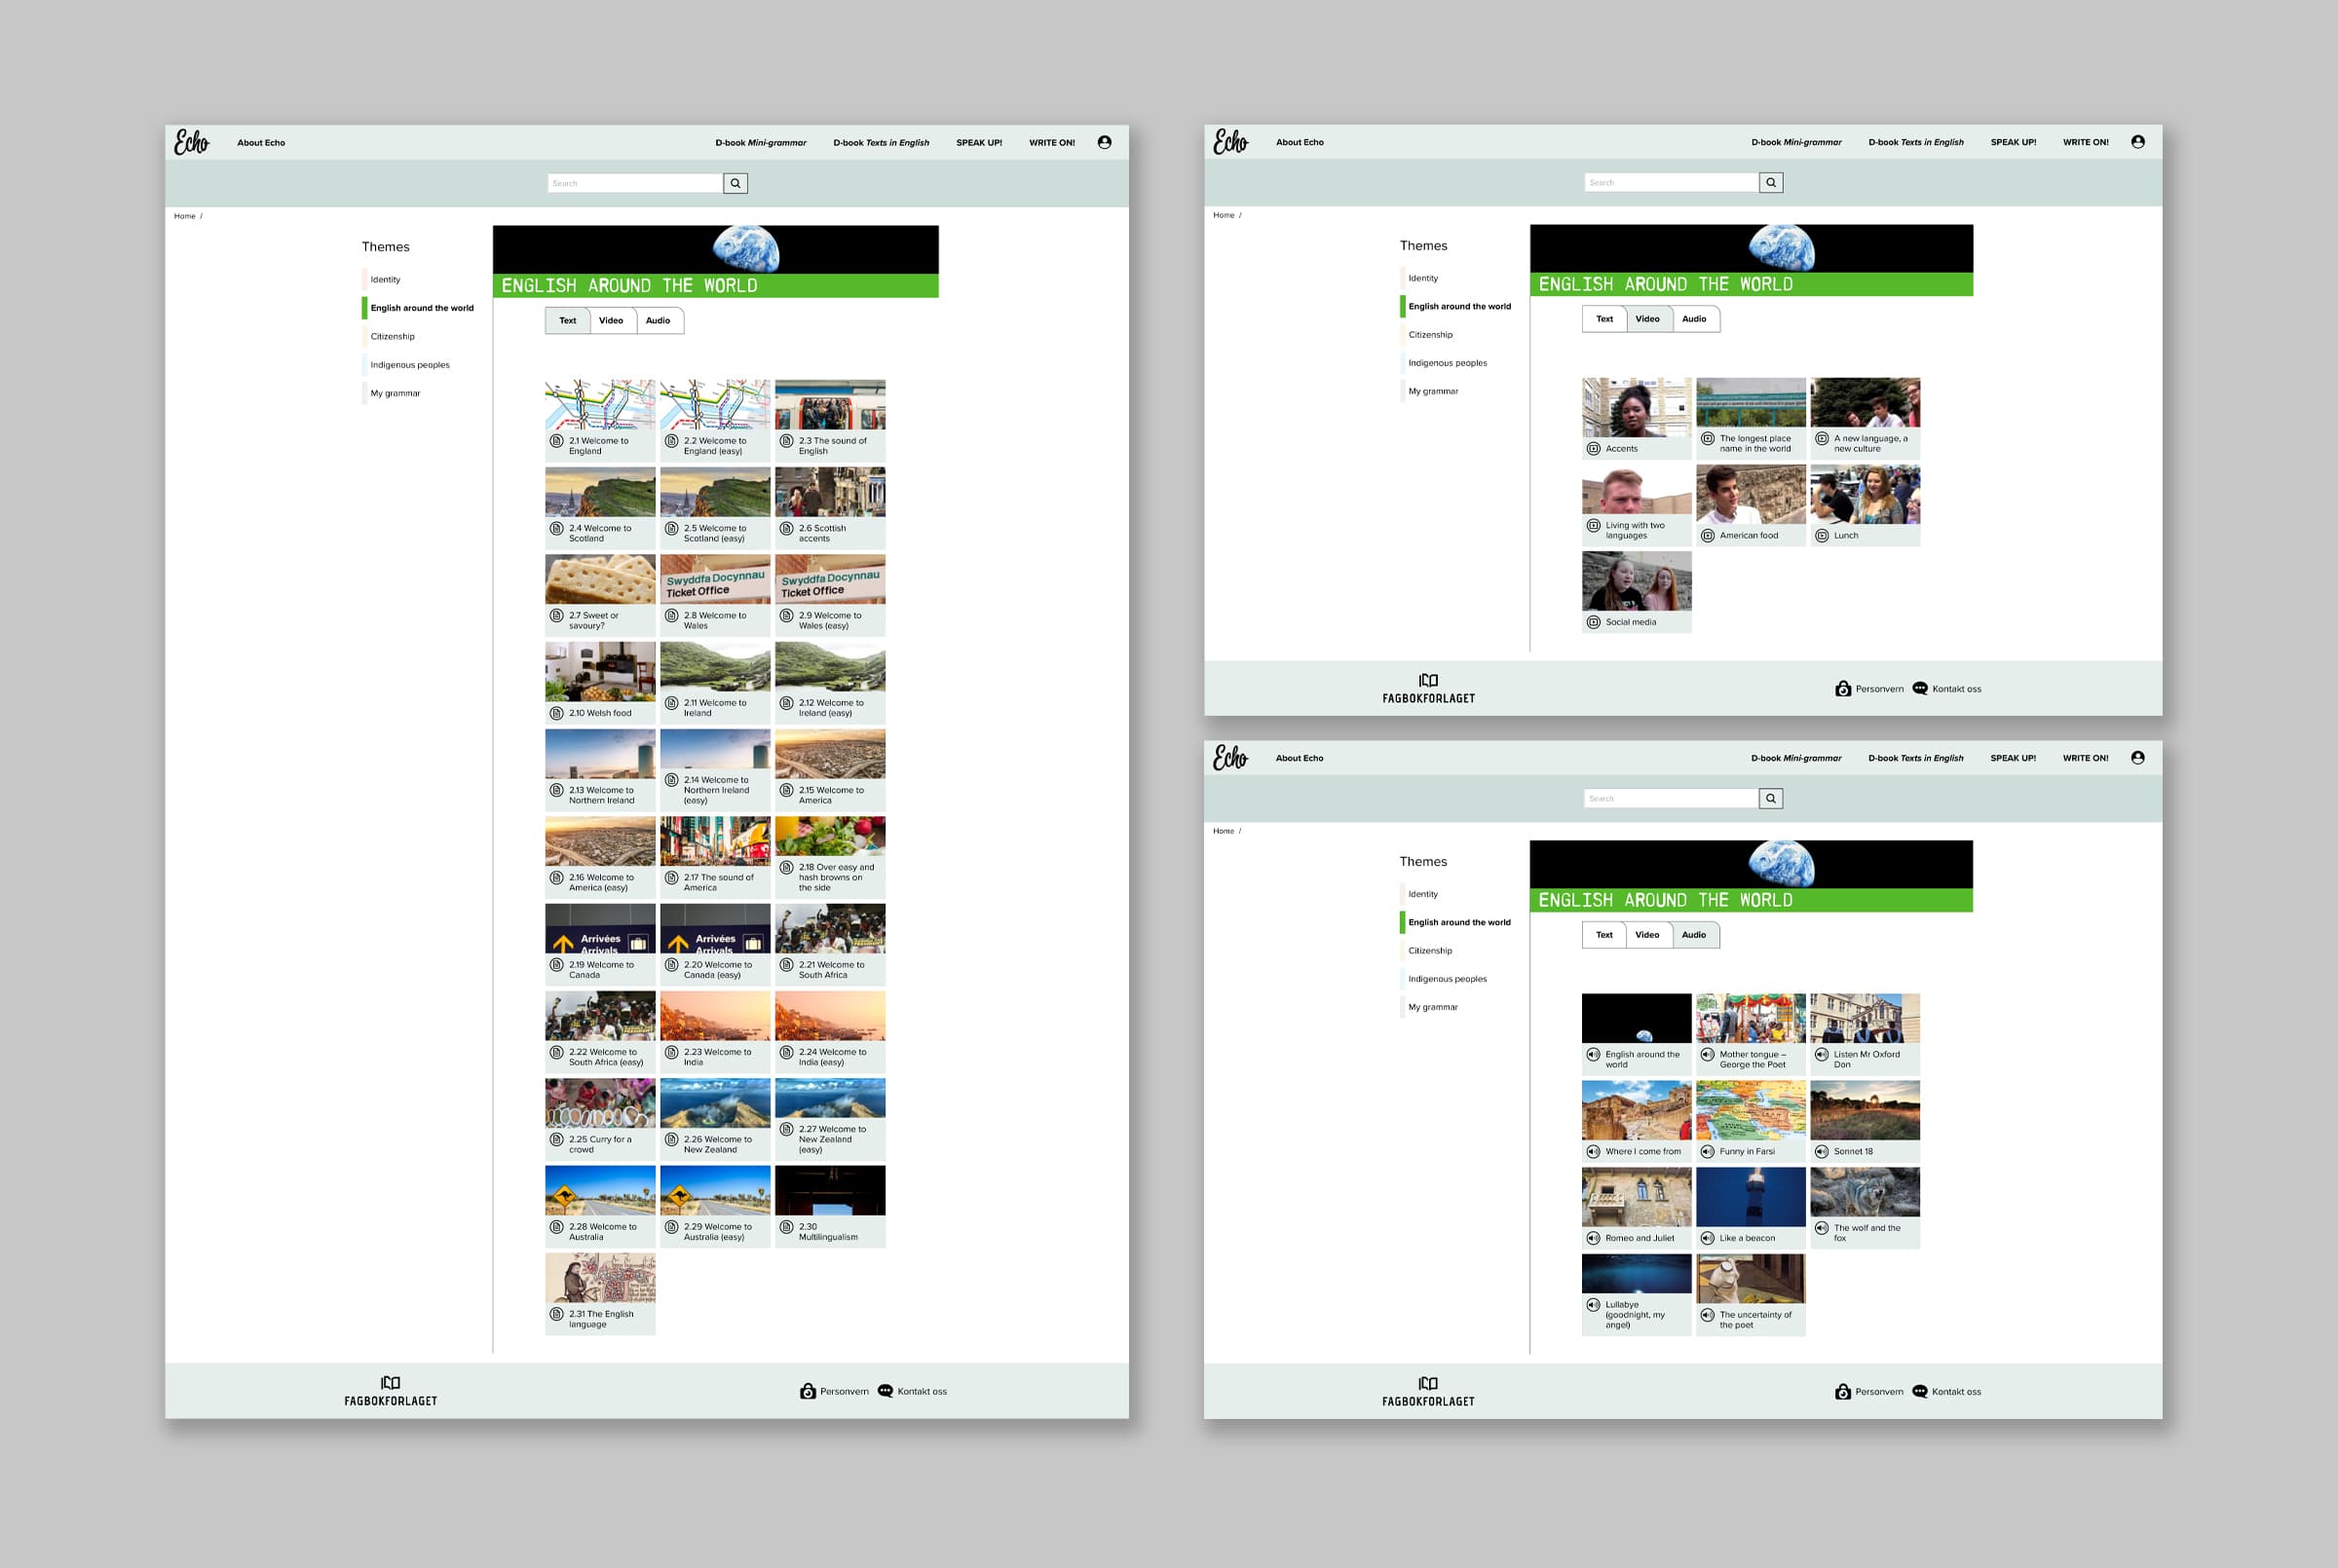 Bildet viser tre skjermdumper av delen av boken som heter "English around the world" satt sammen i en collage. Hvert bilde viser de ulike oppgavetypene: text, video og audio.